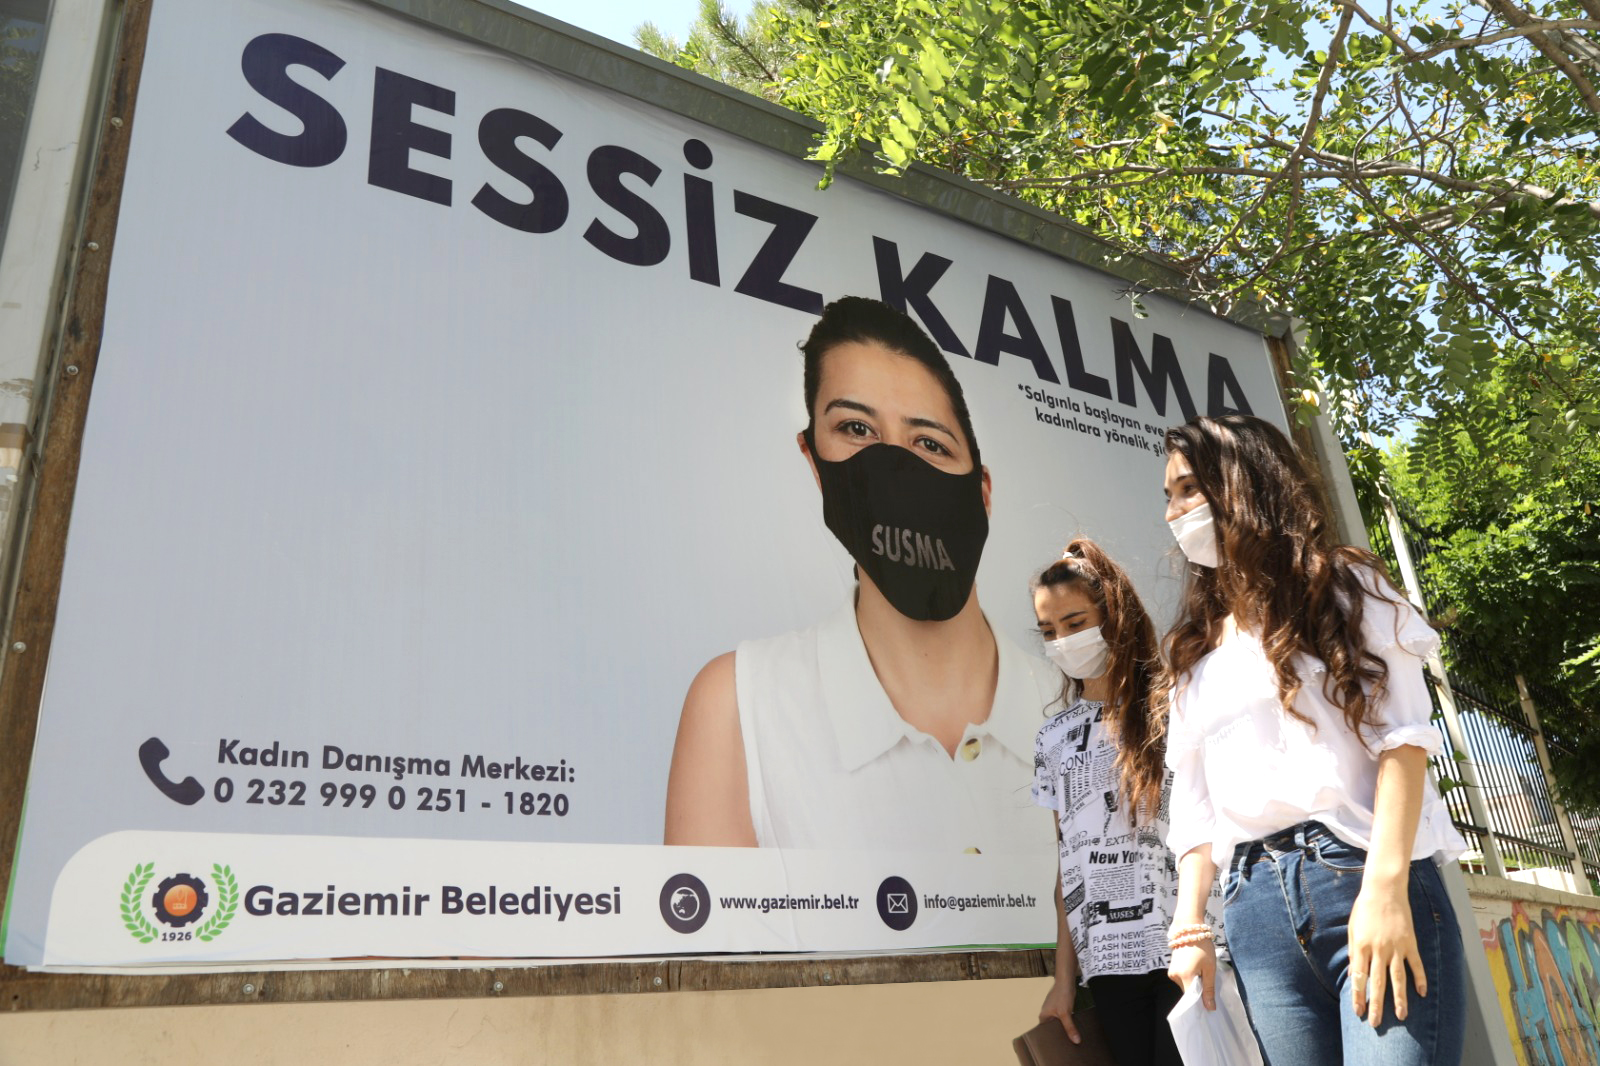 Gaziemir’den kadınlara, sessiz kalma çağrısı